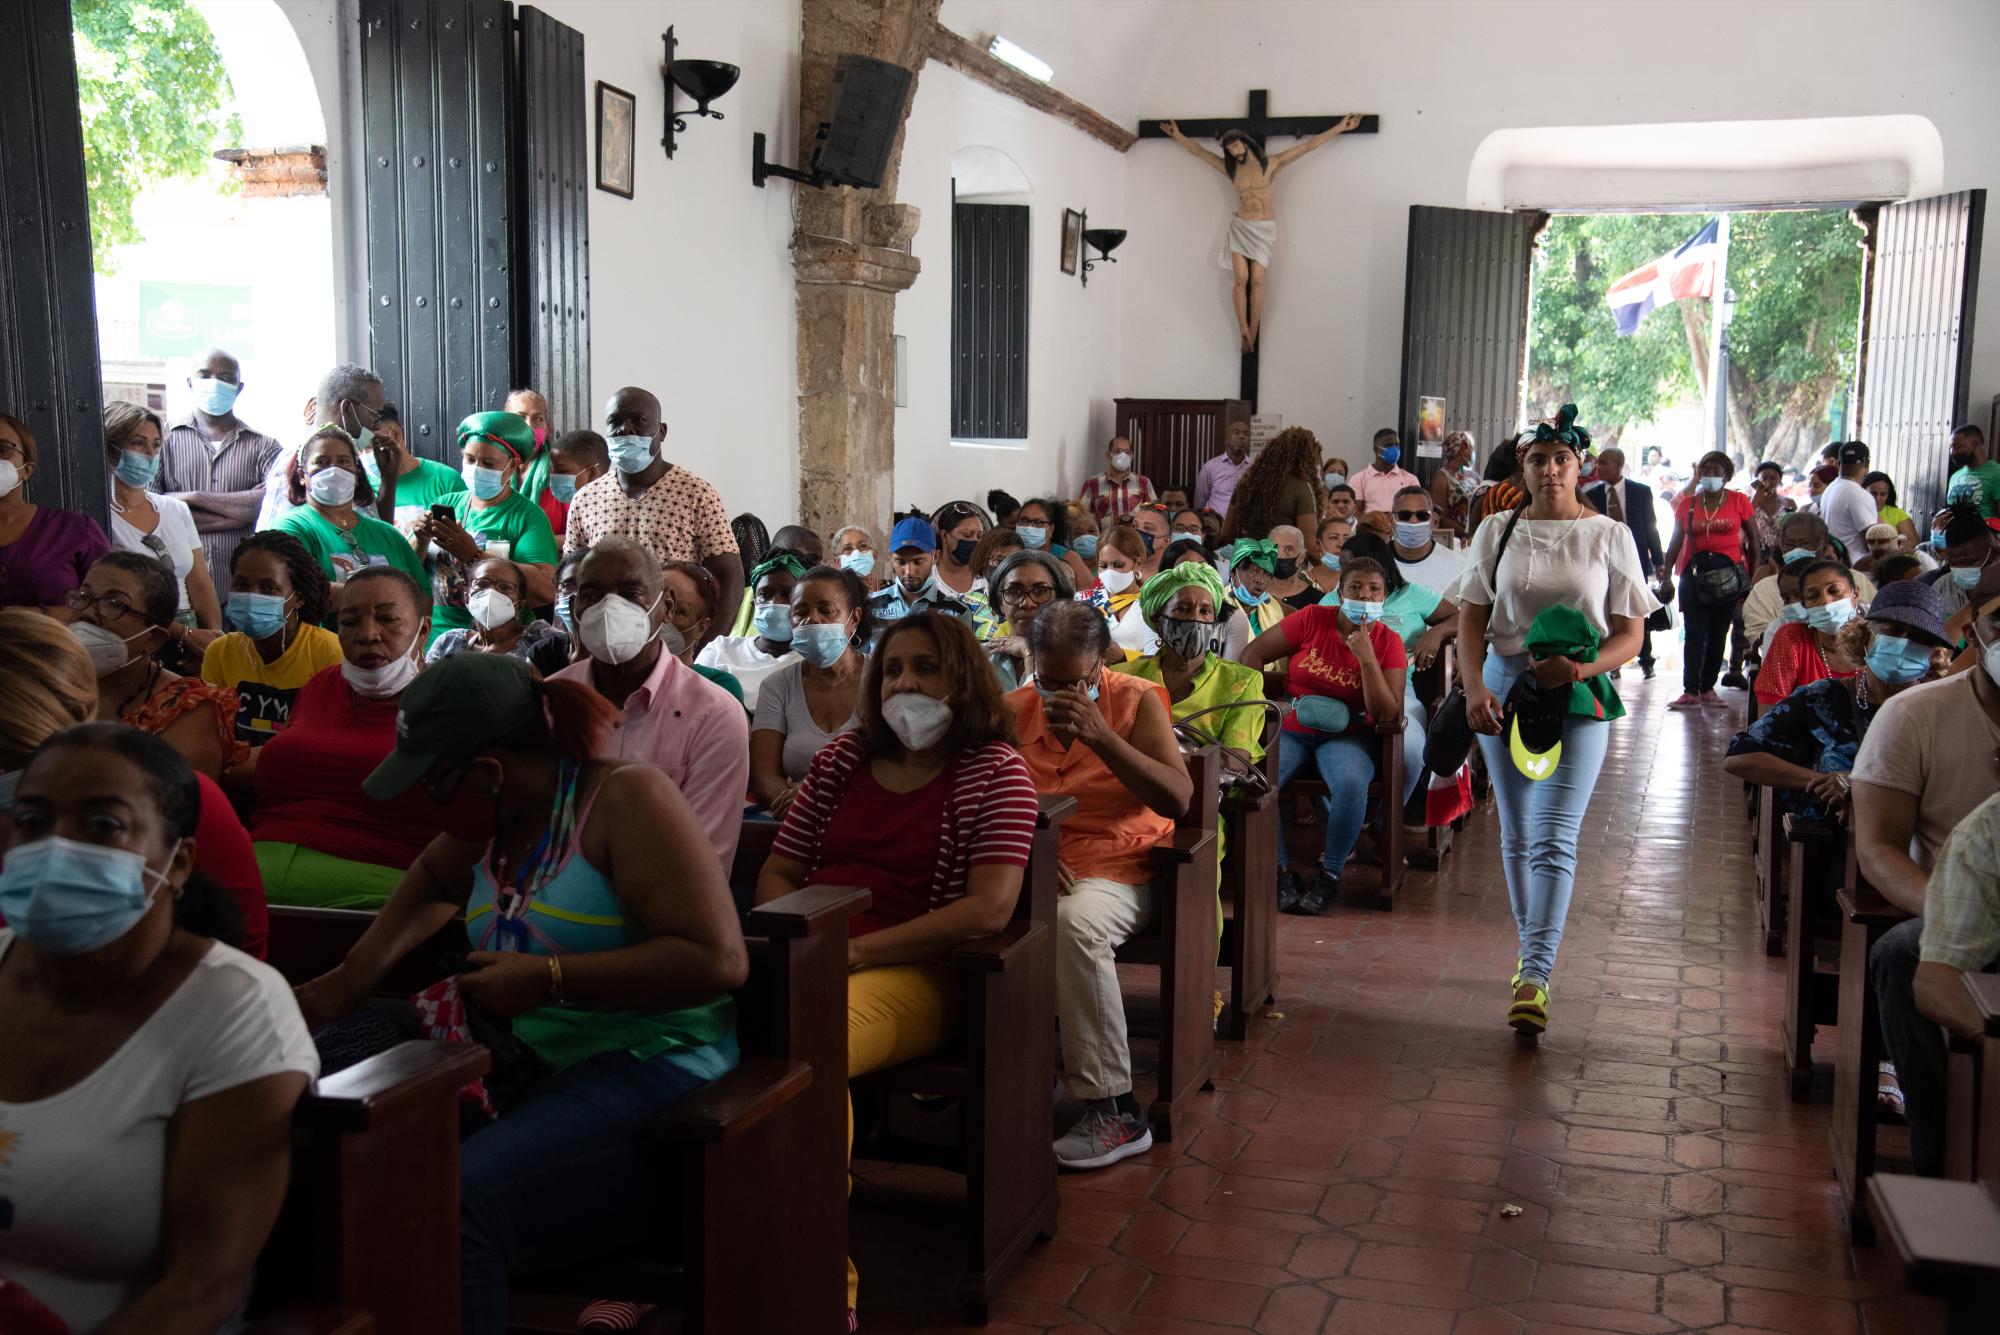 La iglesia San Miguel, ubicada en la calle José Reyes en la Zona Colonial, se encuentra repleta de personas durante la festividad (Foto: Dania Acevedo / Diario Libre)